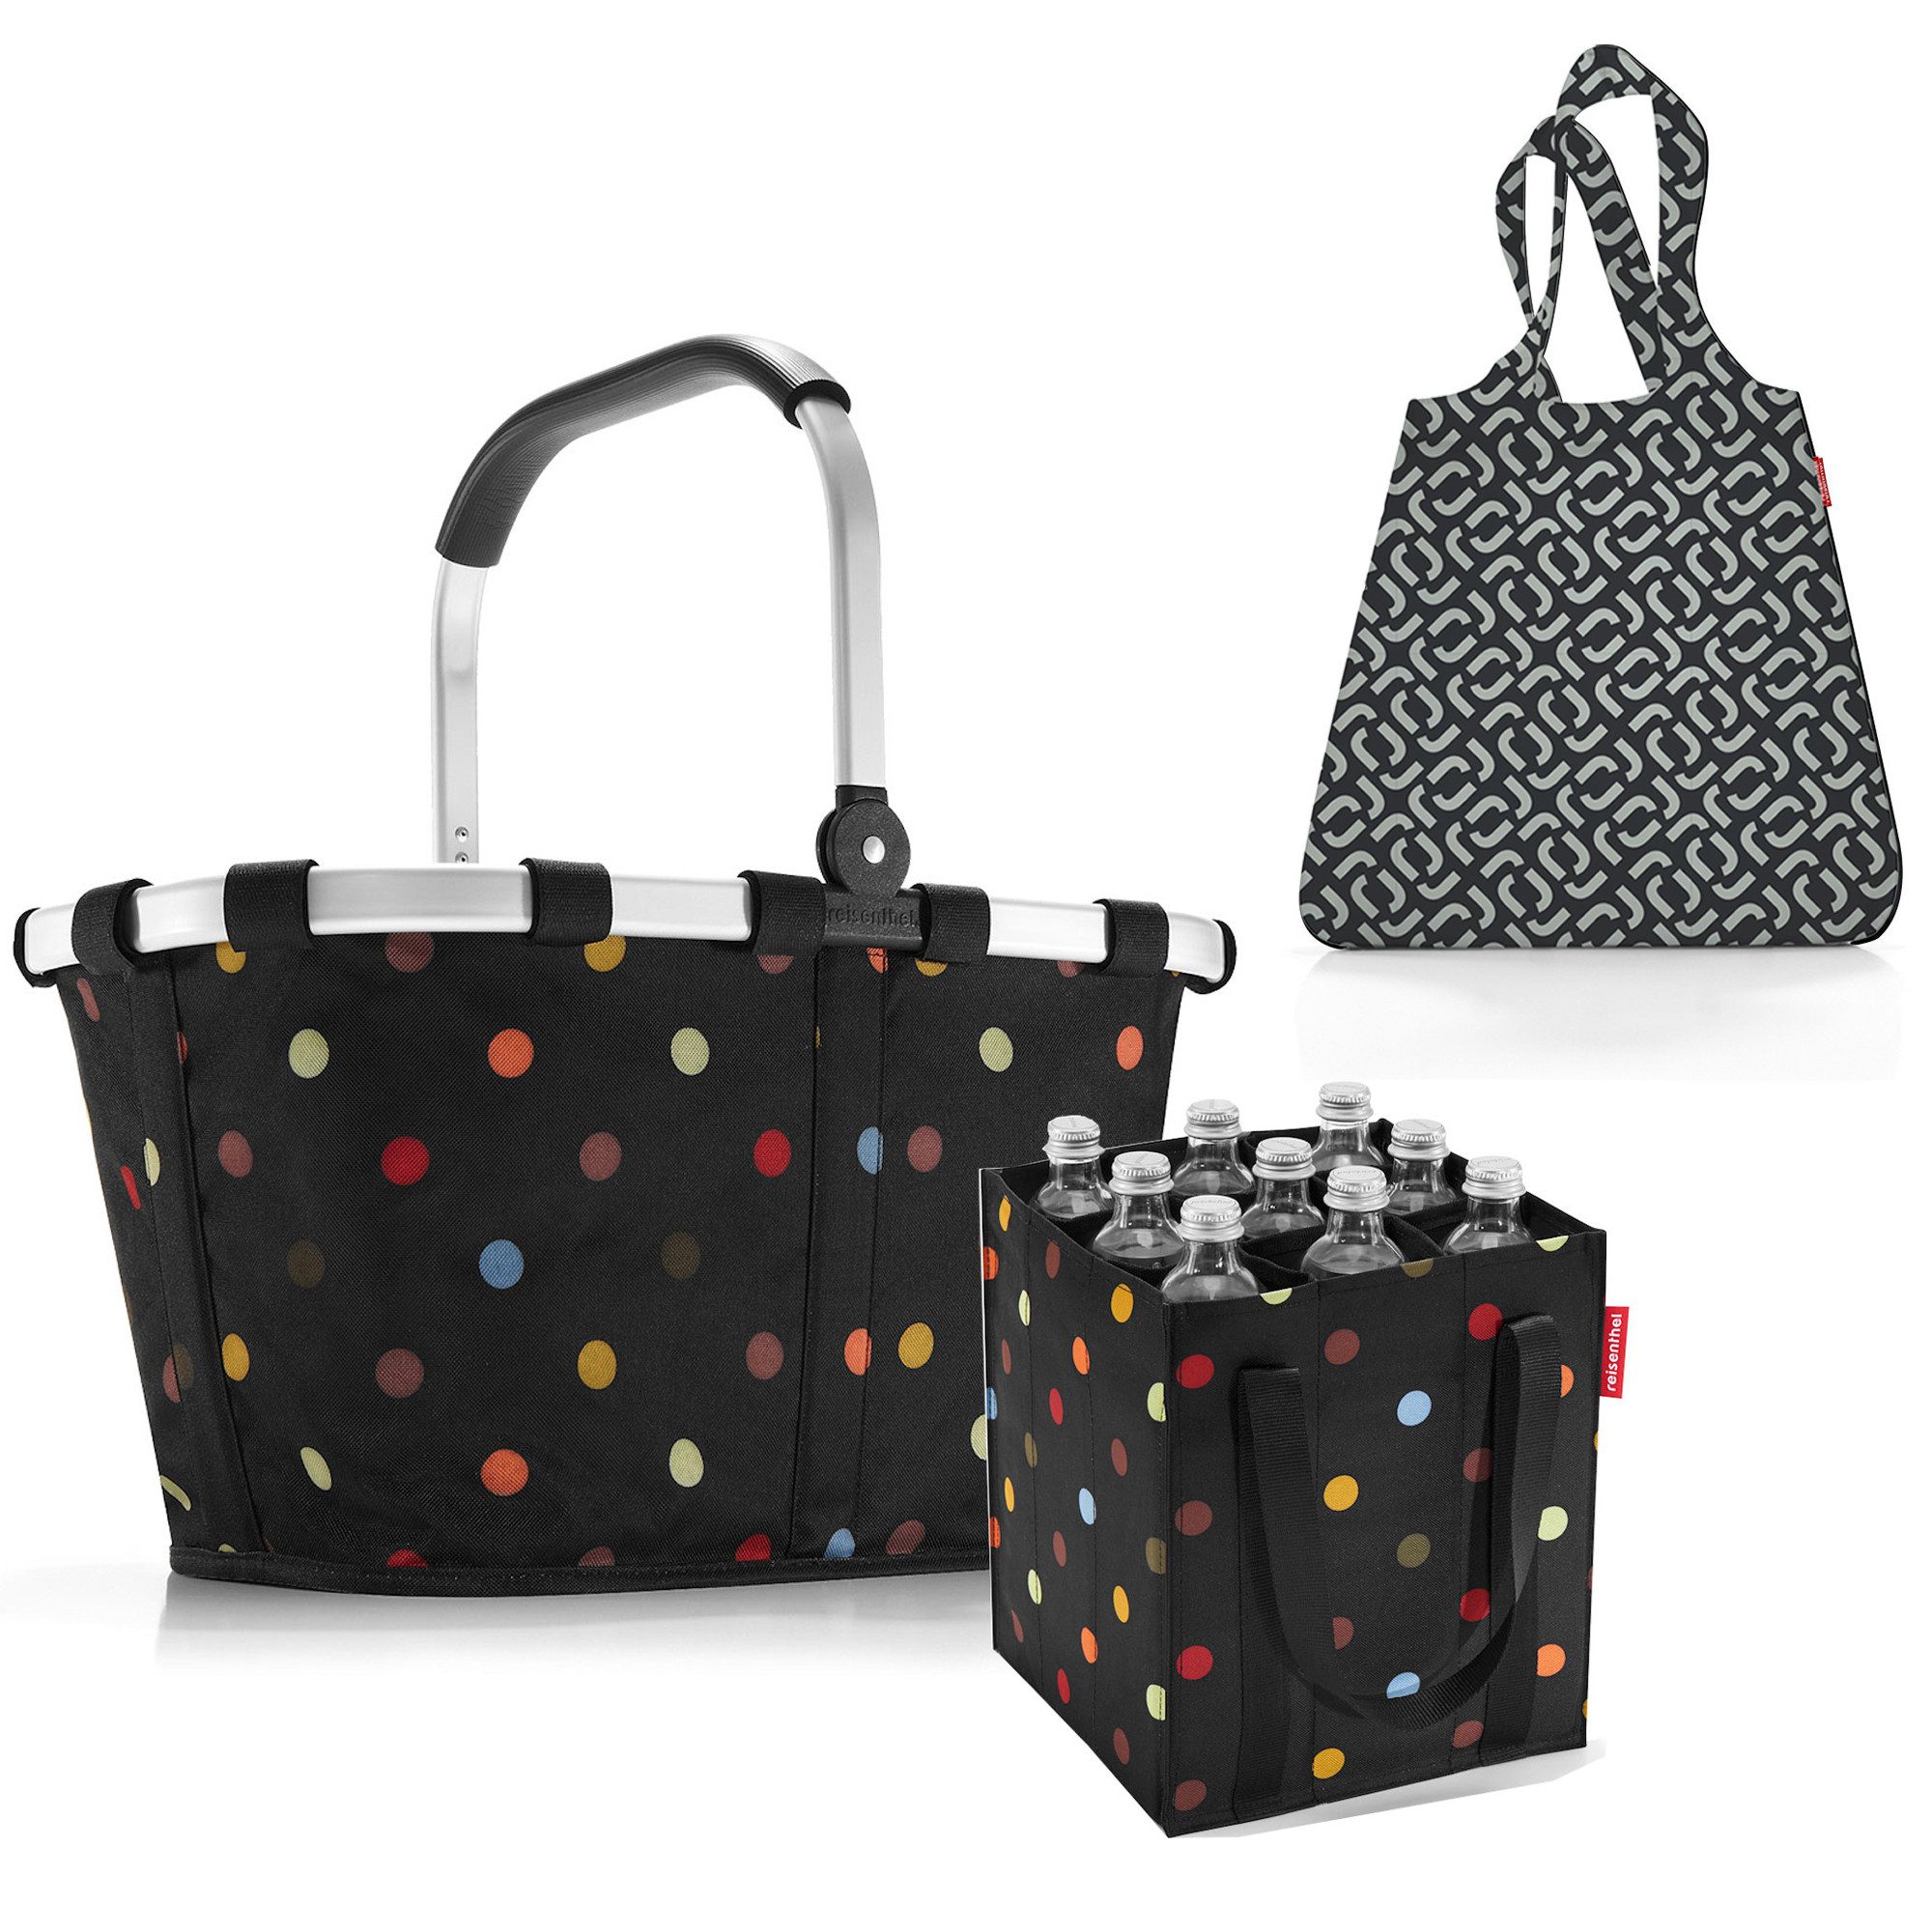 REISENTHEL® Einkaufskorb Set aus carrybag, coolerbag und bottlebag, Einkaufskorb-Set für Wochenmarkt und Großeinkauf